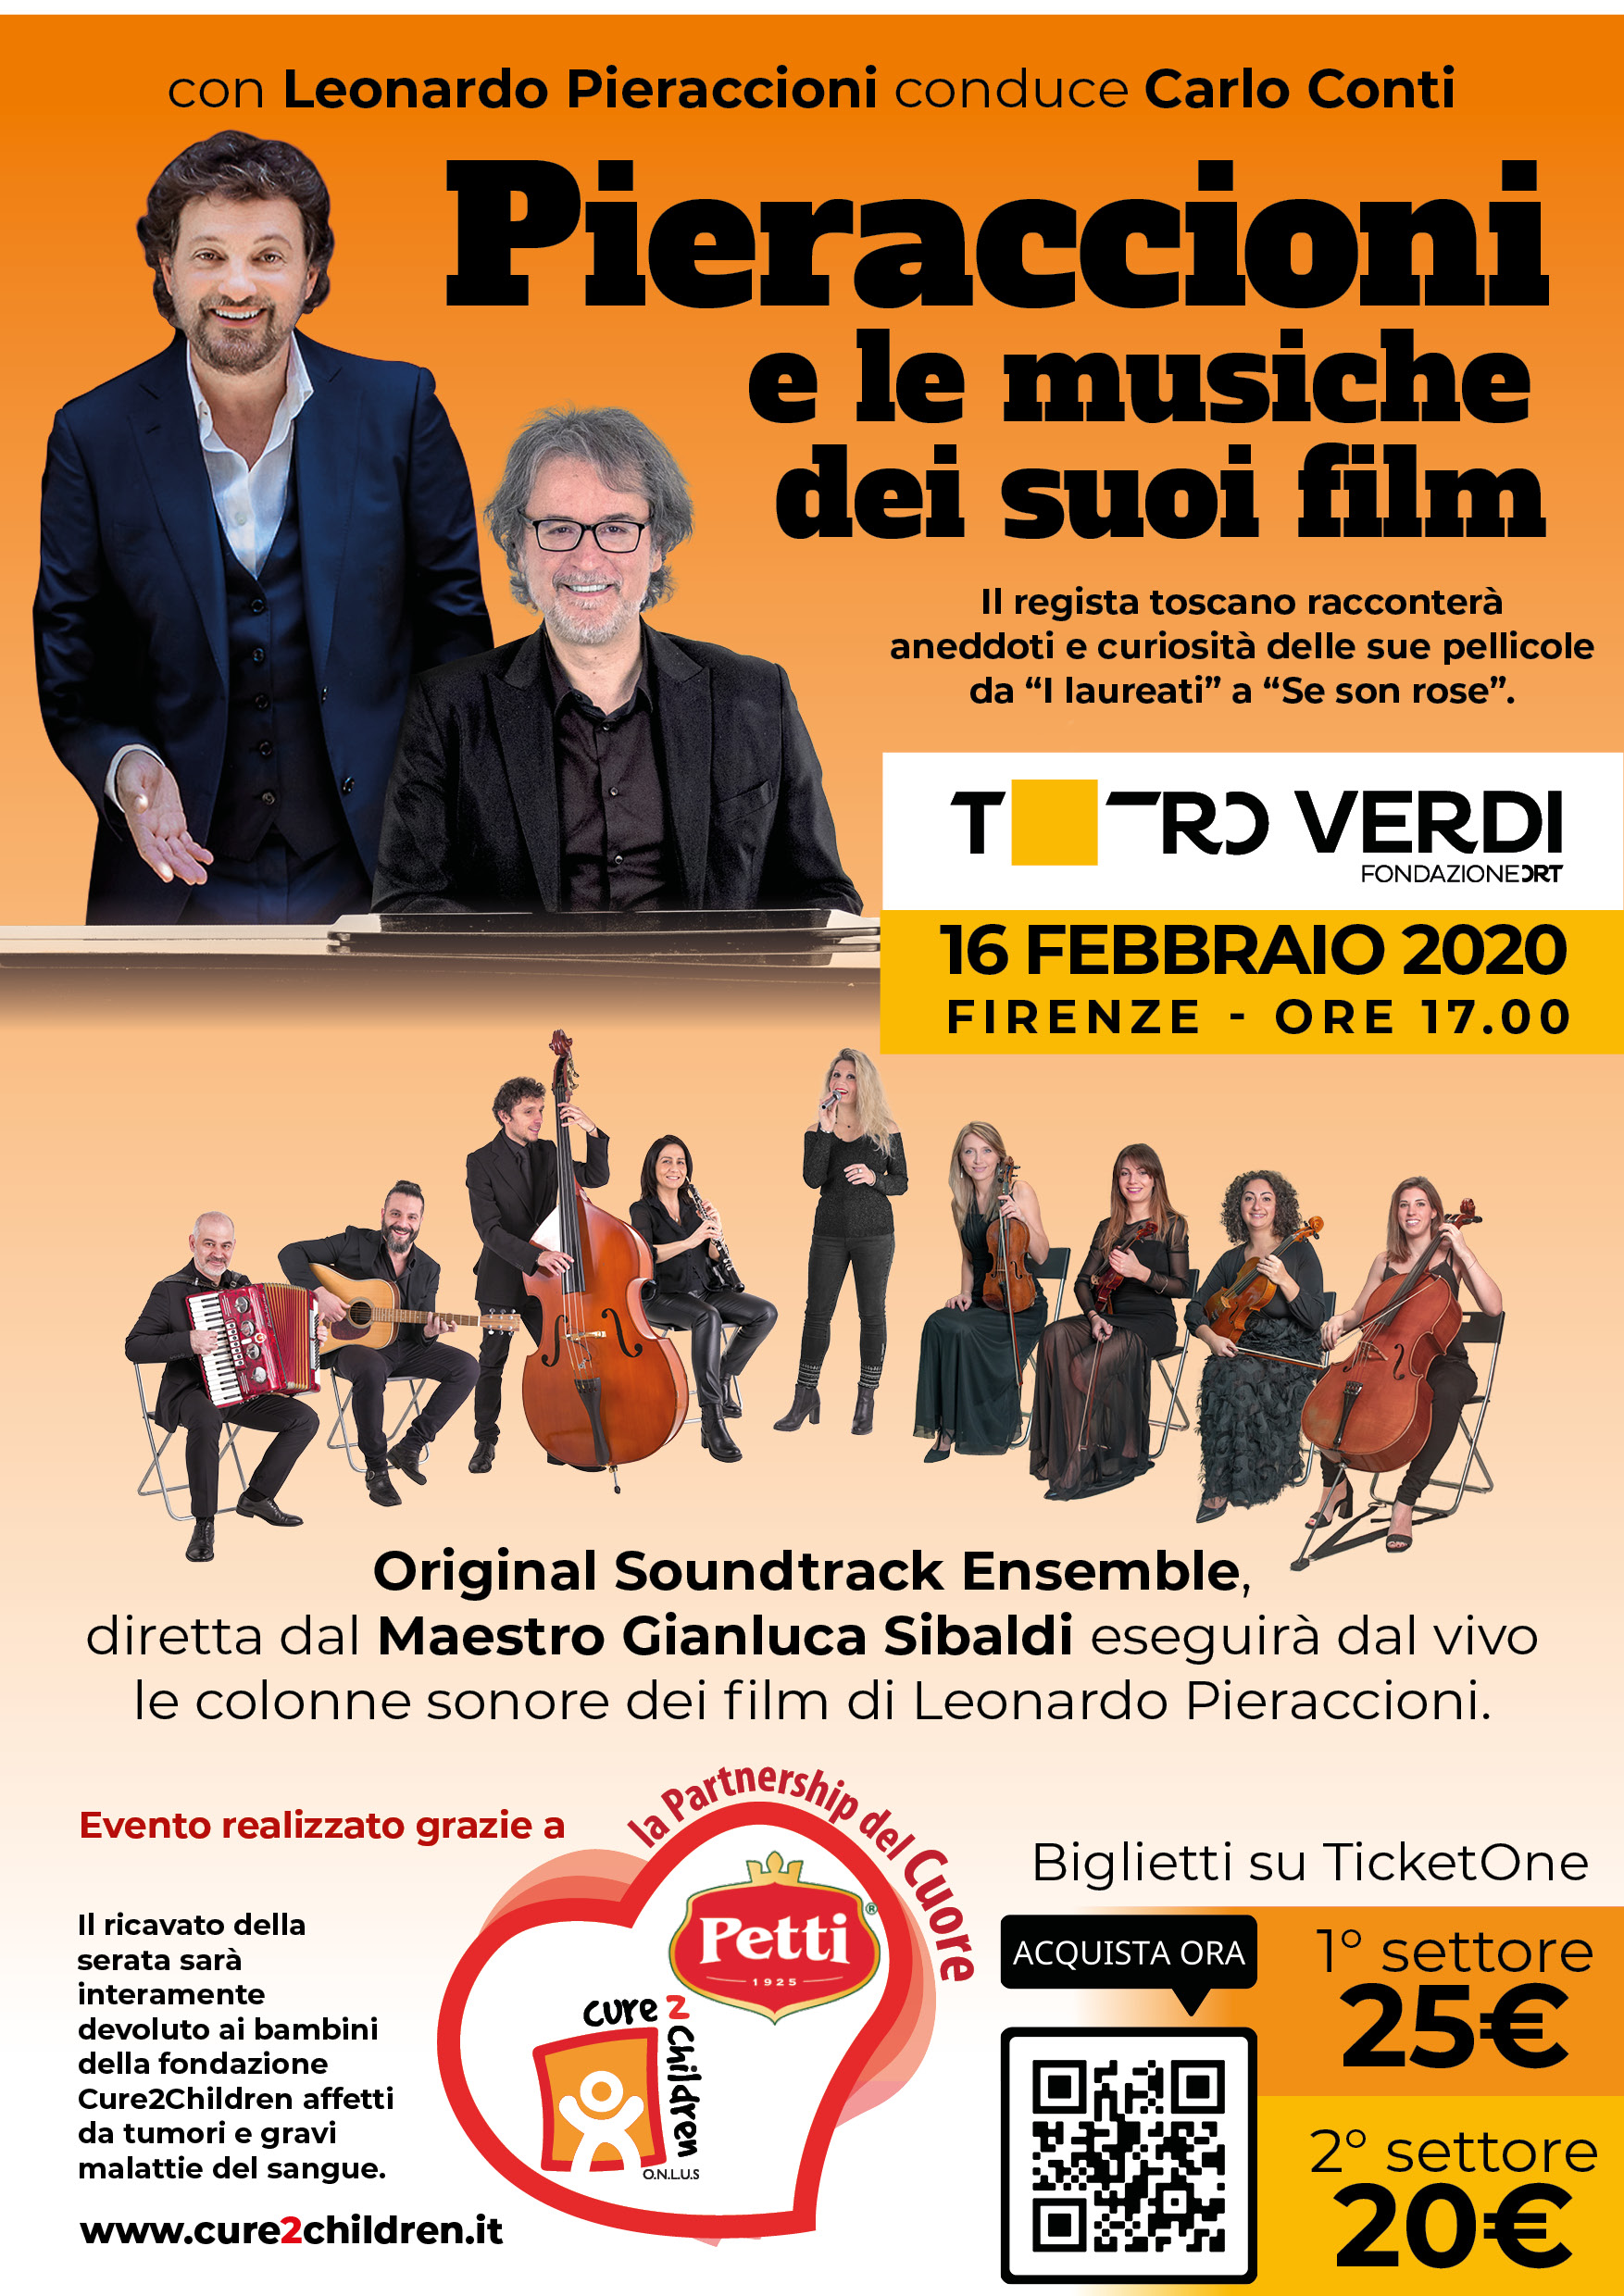 LEONARDO PIERACCIONI E LE MUSICHE DEI SUOI FILM - Teatro verdi domenica 16 febbraio 2020 ore 17 Condurr� l'evento Carlo Conti